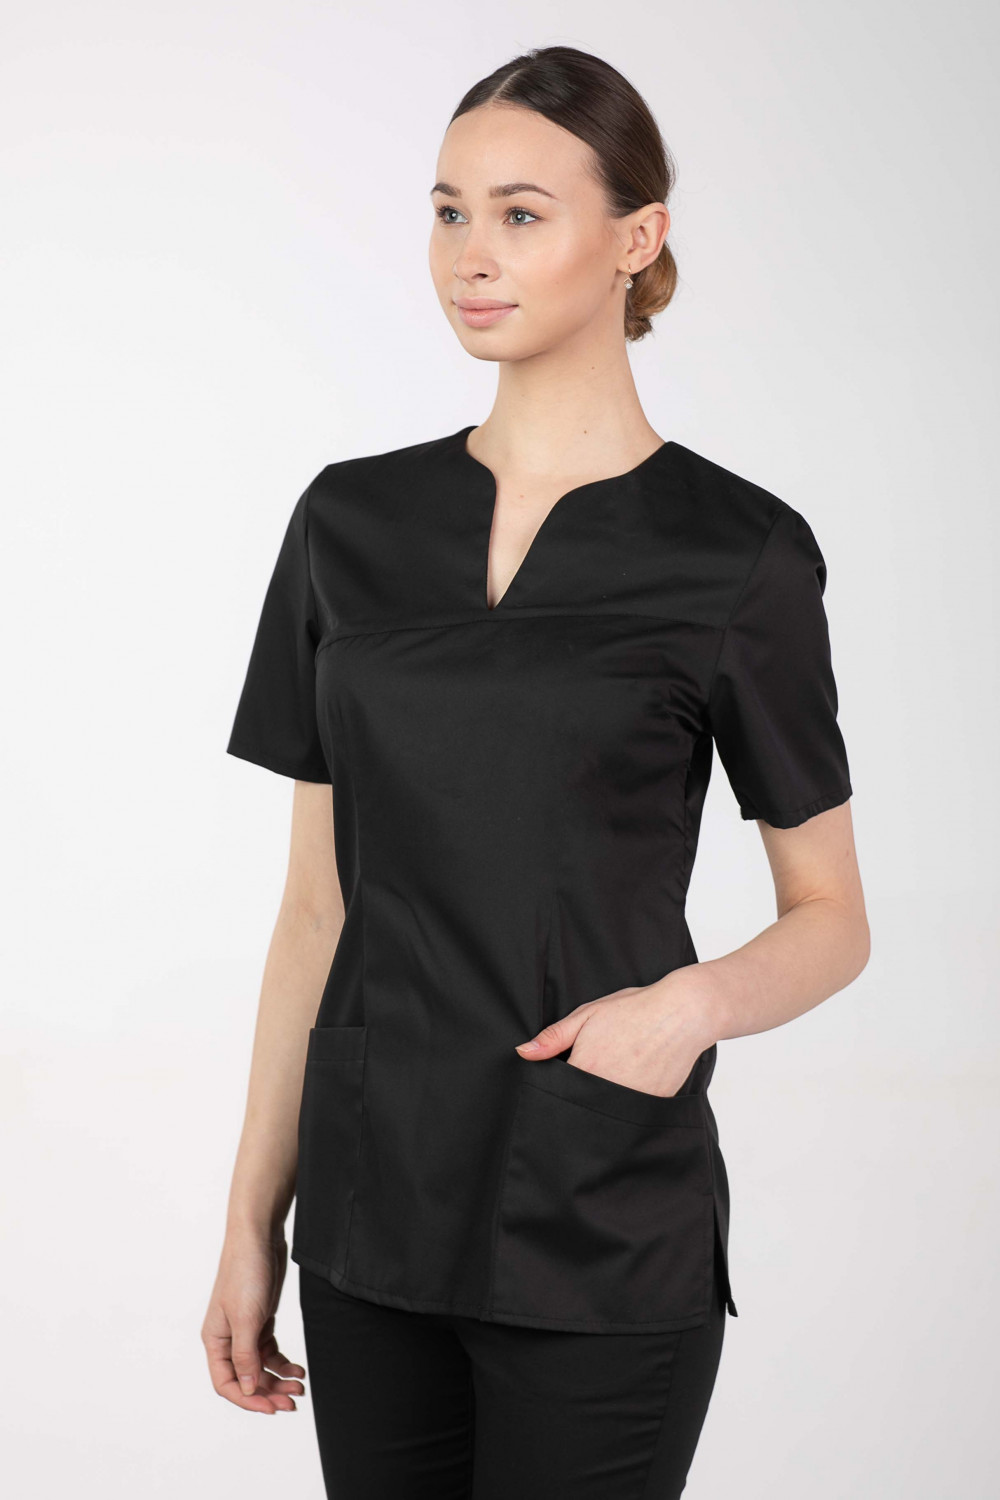 M-323X Bluza damska medyczna elastyczna kosmetyczna kolor czarny